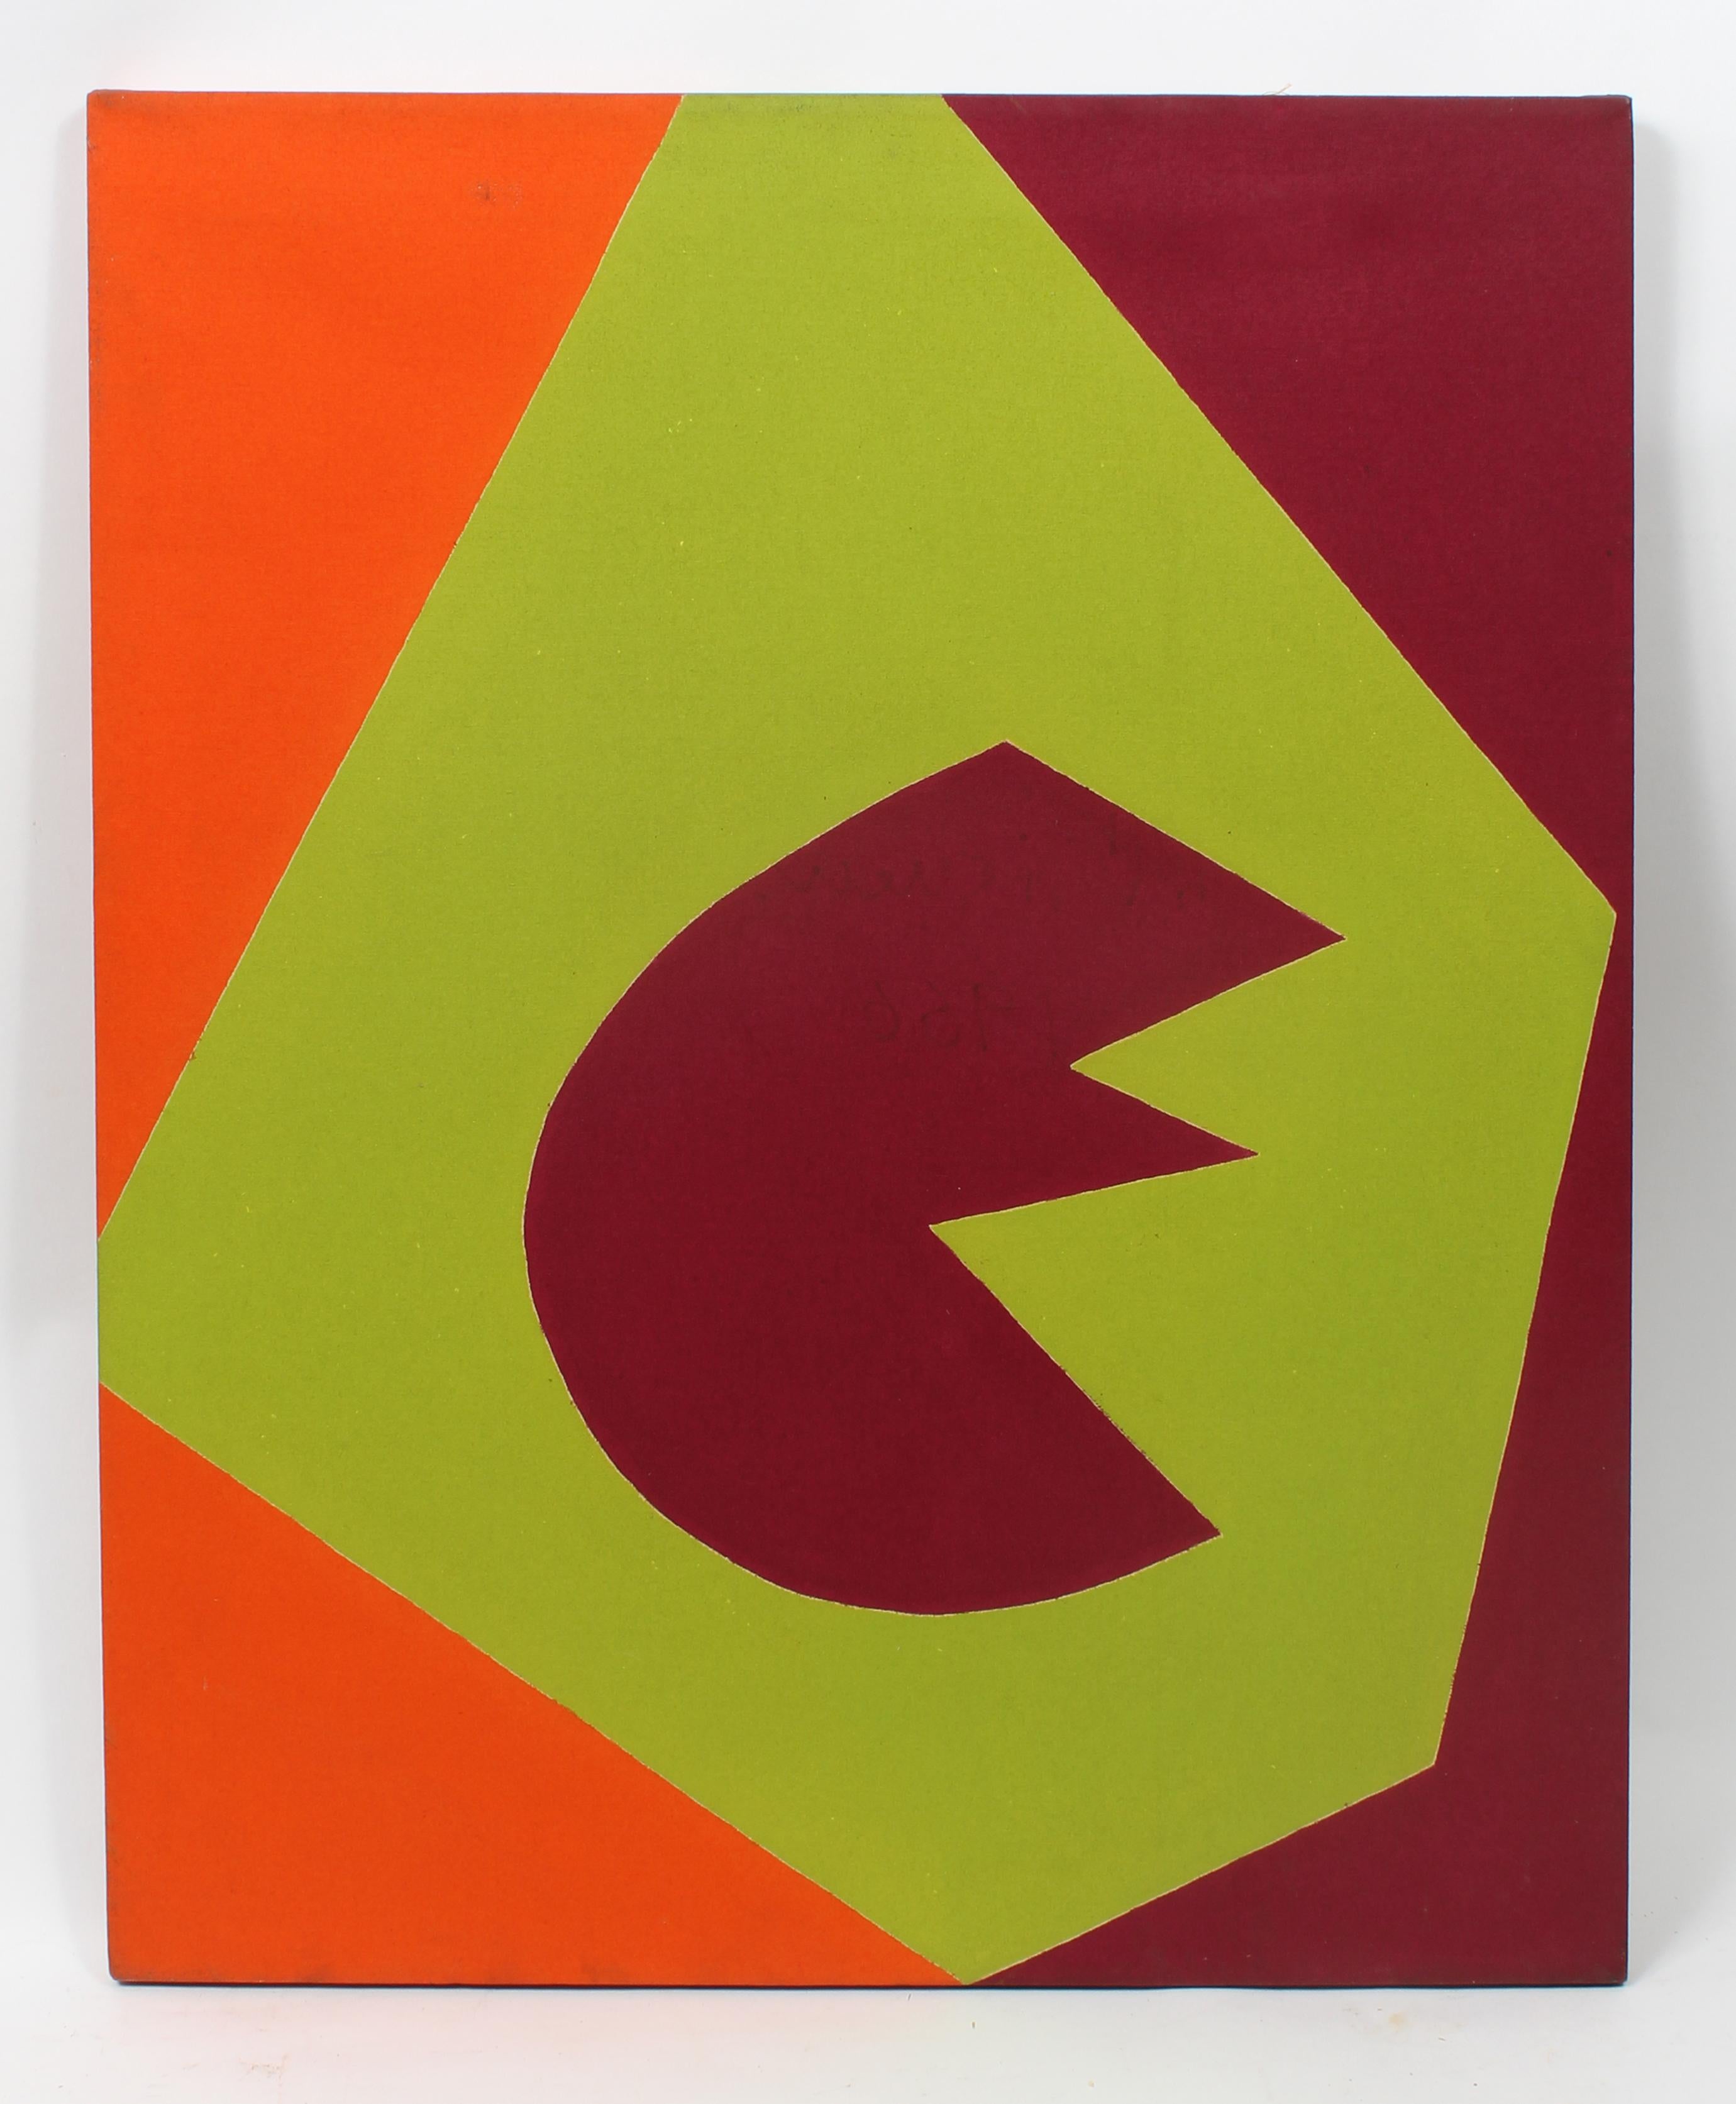 Minimalistisches, minimalistisches Gemälde, New York, amerikanische Künstlerin, Maroon, Grün, Orange 1966